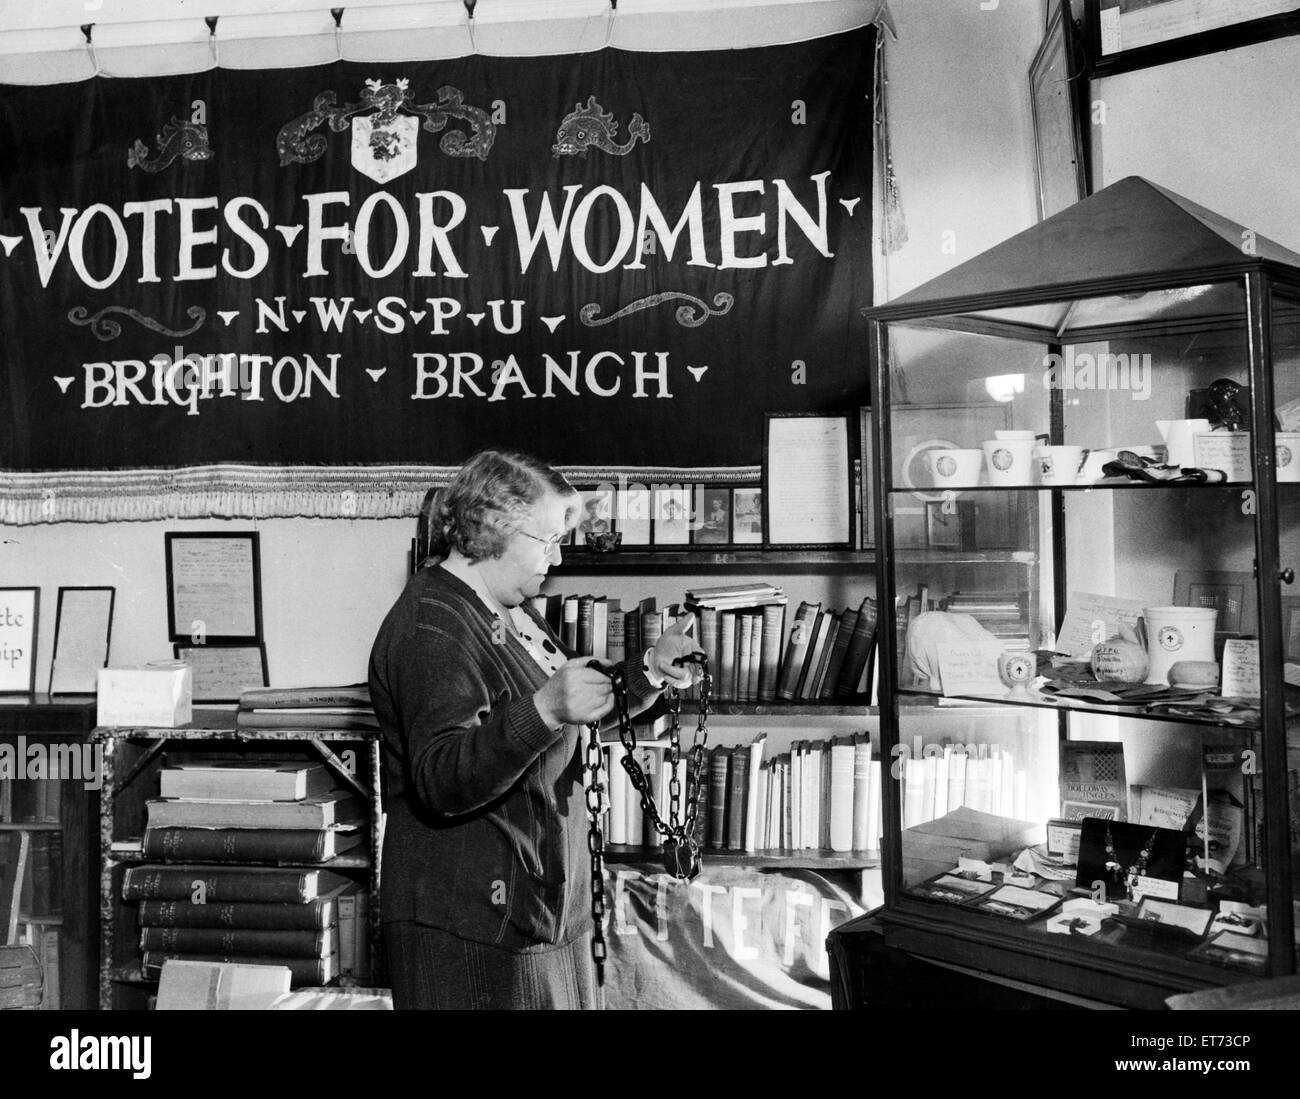 Ein Museum in South Kensington, London, die militanten Ausrüstungen Frauen Suffragetten während ihrer Kampagne für das Recht, Stimmen hält. 24. März 1939. Stockfoto